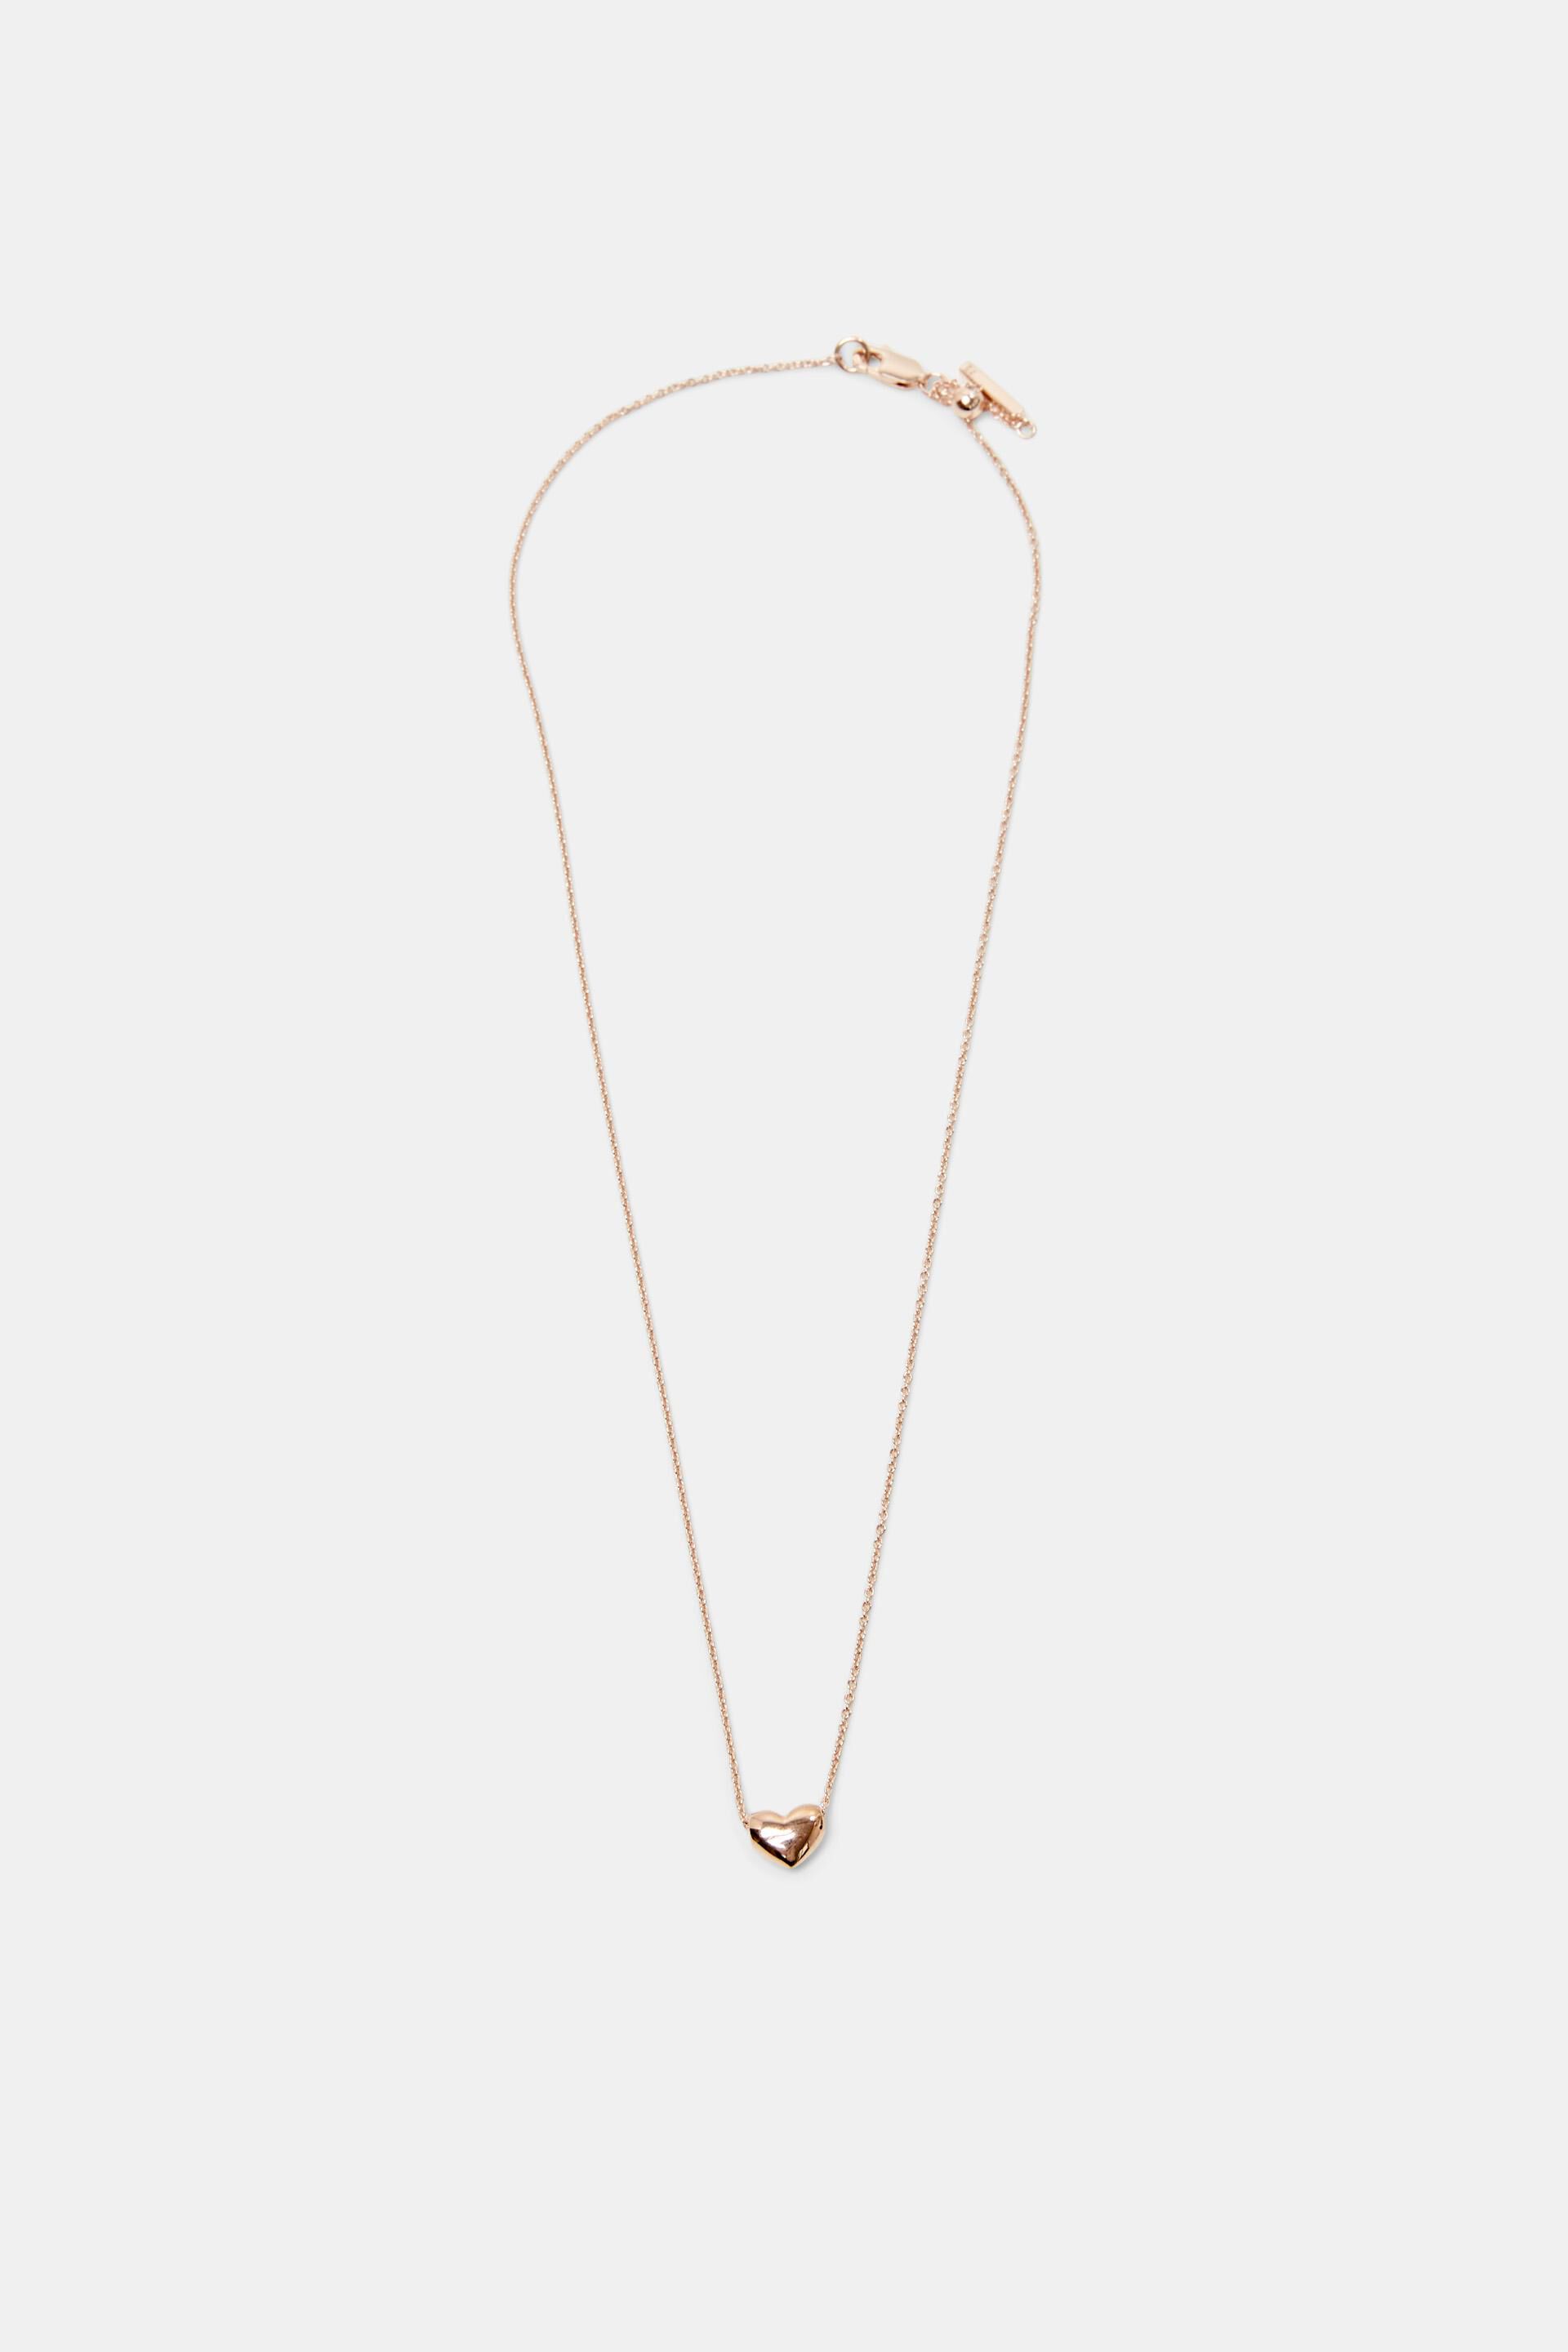 Esprit Online Store Necklaces